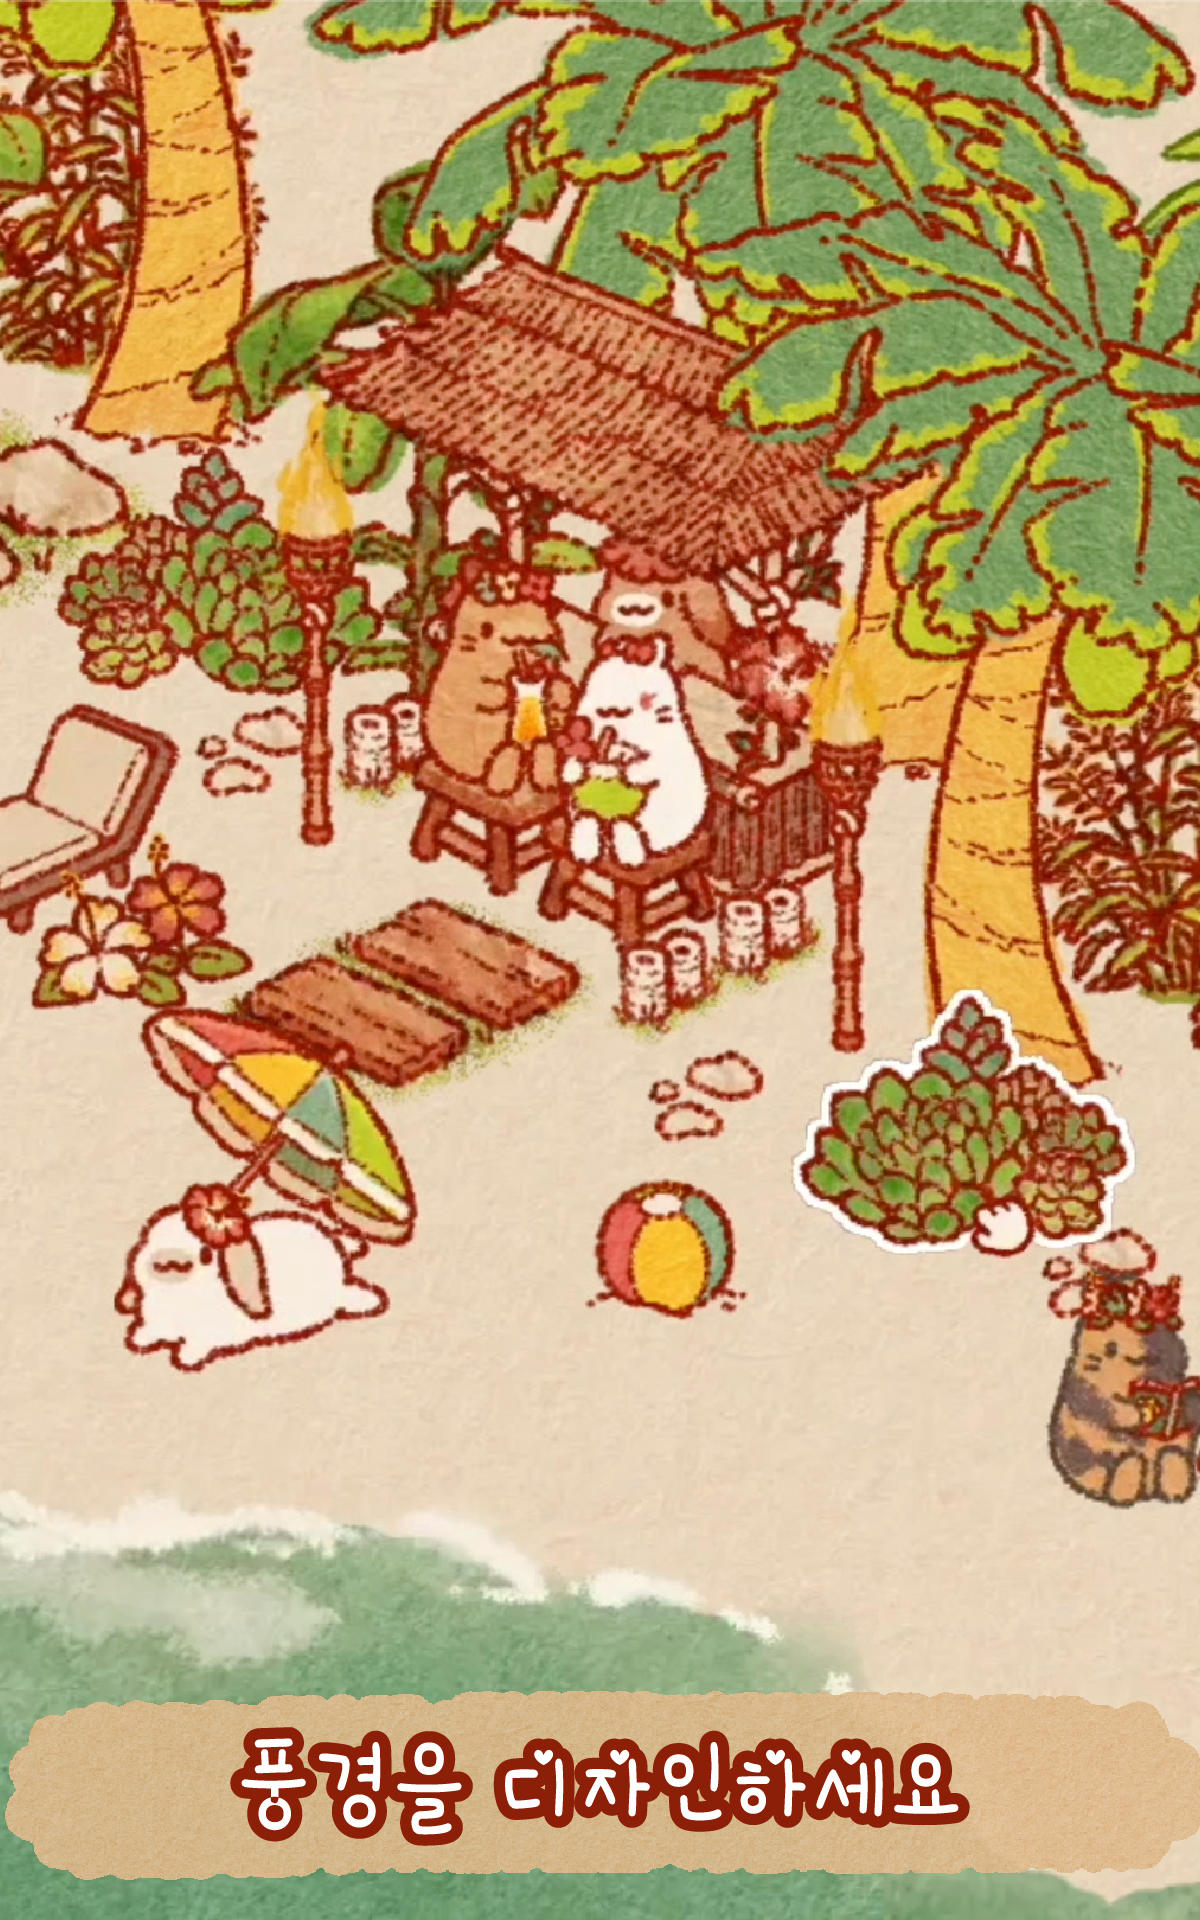 토끼의 섬: 귀여운 토끼 게임 게임 스크린 샷